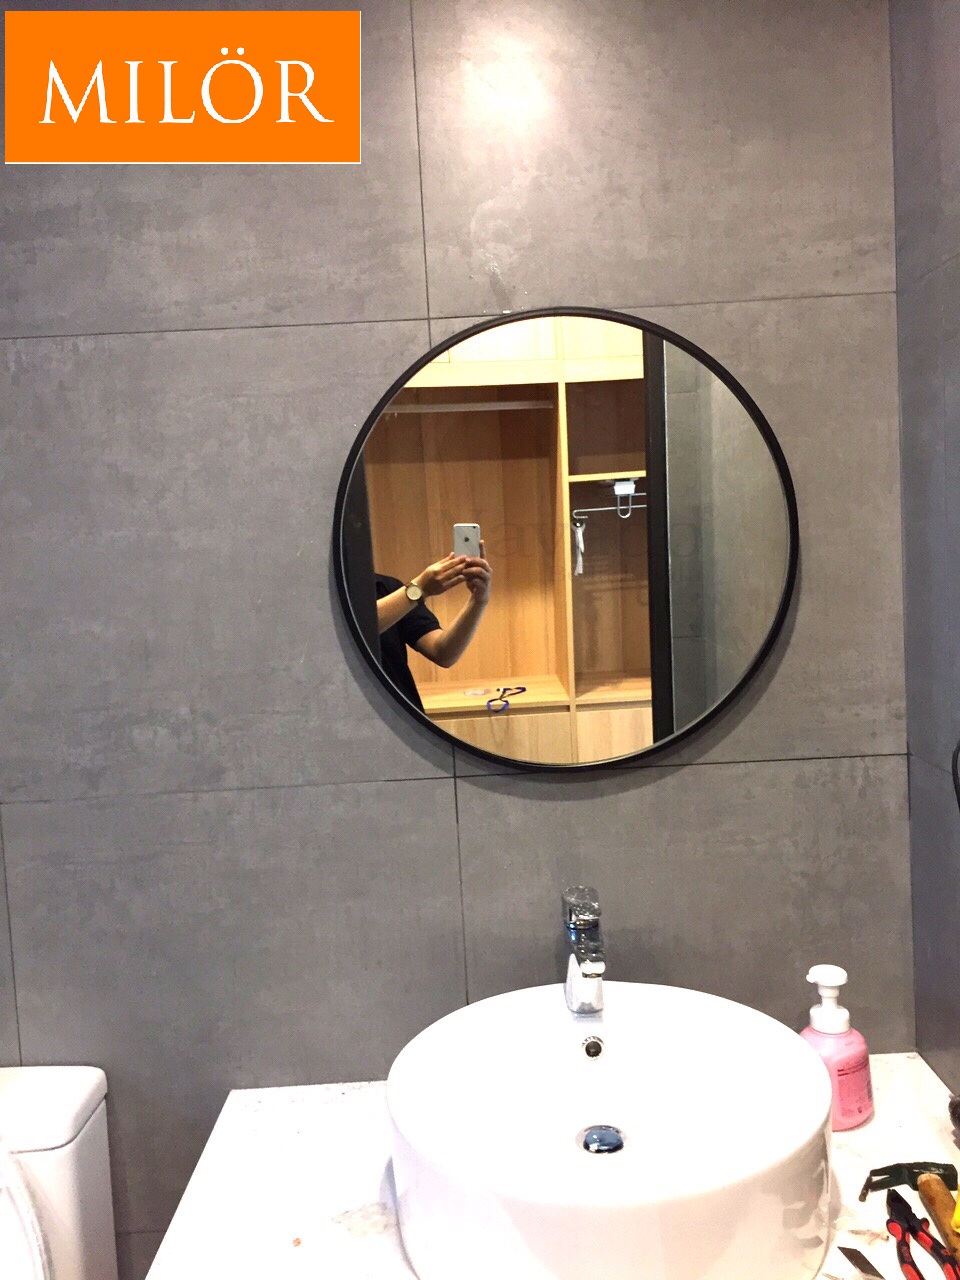 Gương tròn nhà tắm được thiết kế tinh tế, sang trọng cùng với hiệu ứng đèn led chủ đạo, sẽ tạo ra không gian tắm rất ấm cúng. Đây chắc chắn sẽ là điểm nhấn nổi bật trong phòng tắm của bạn.